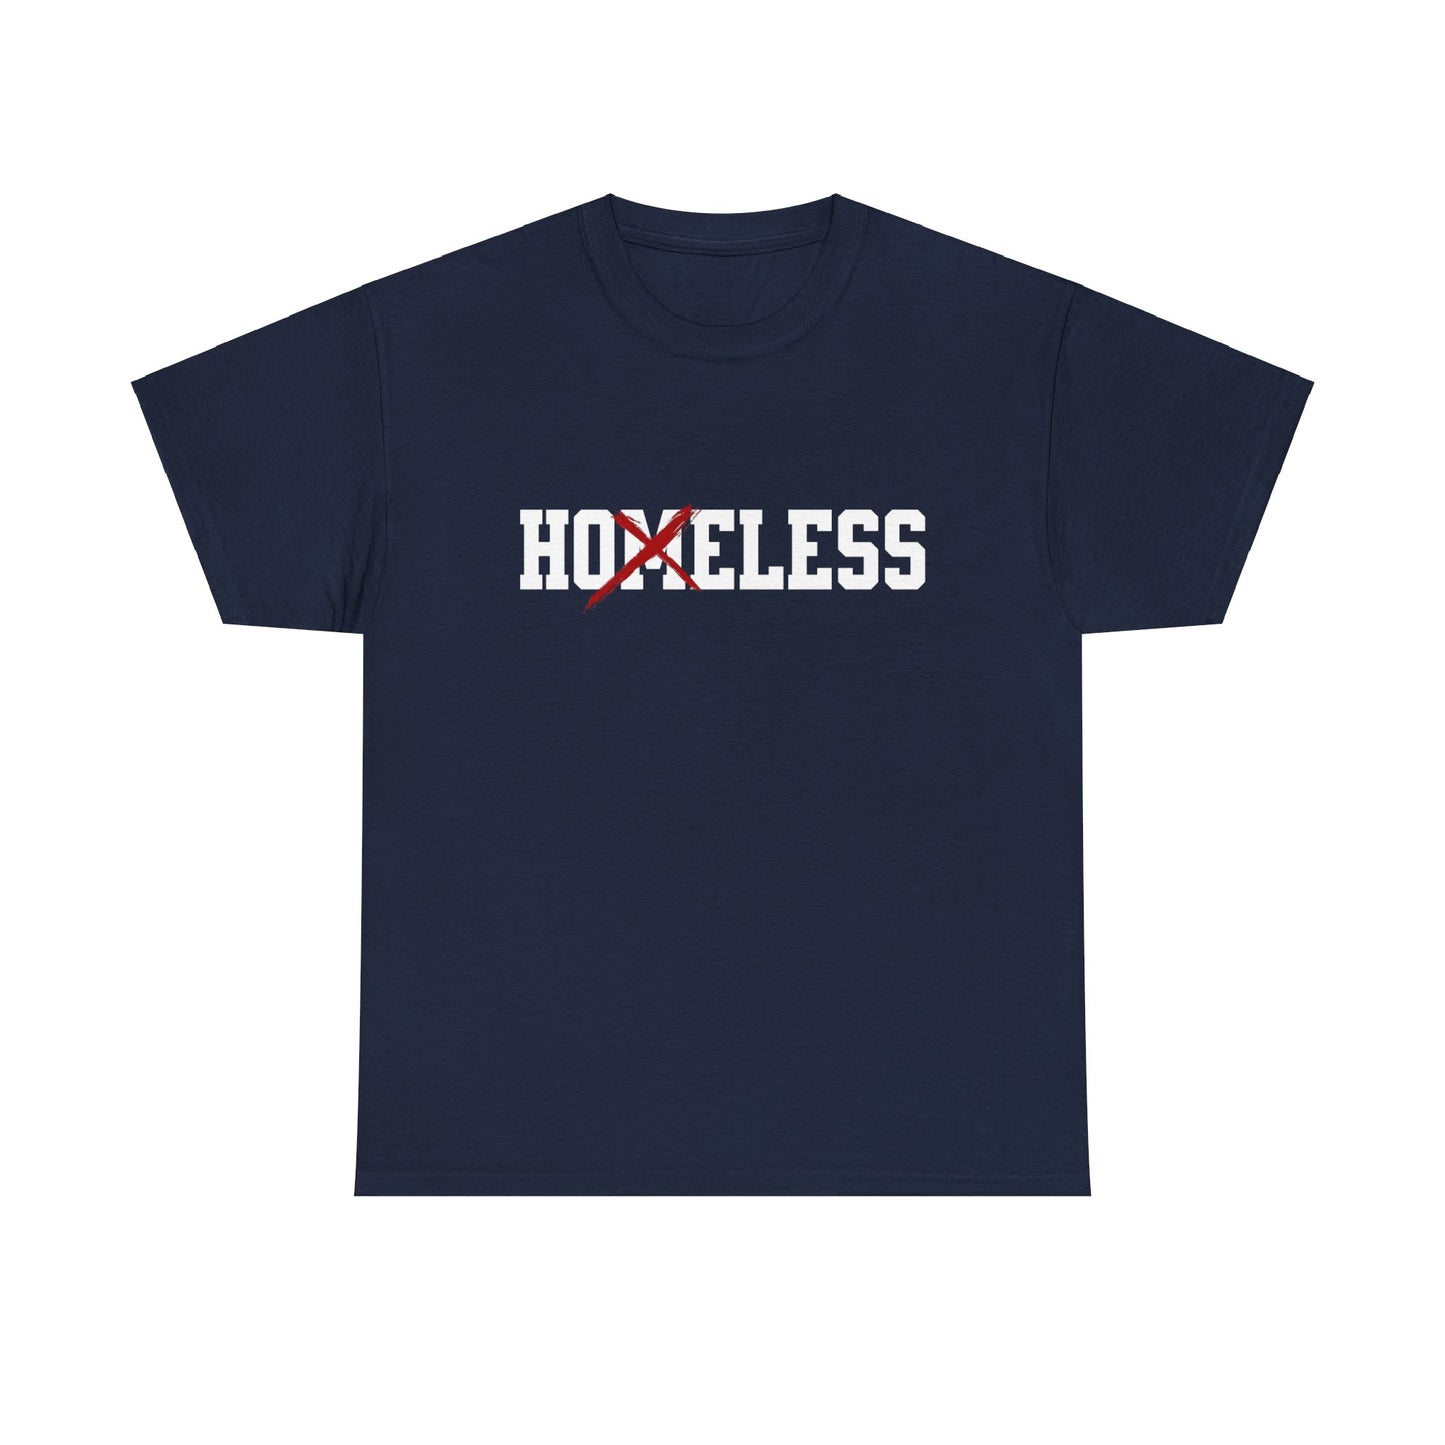 Unisex Shirt in Navy mit dem Spruch Homeless drauf. Das M ist durchgestrichen; also steht auf dem Shirt Hoeless.